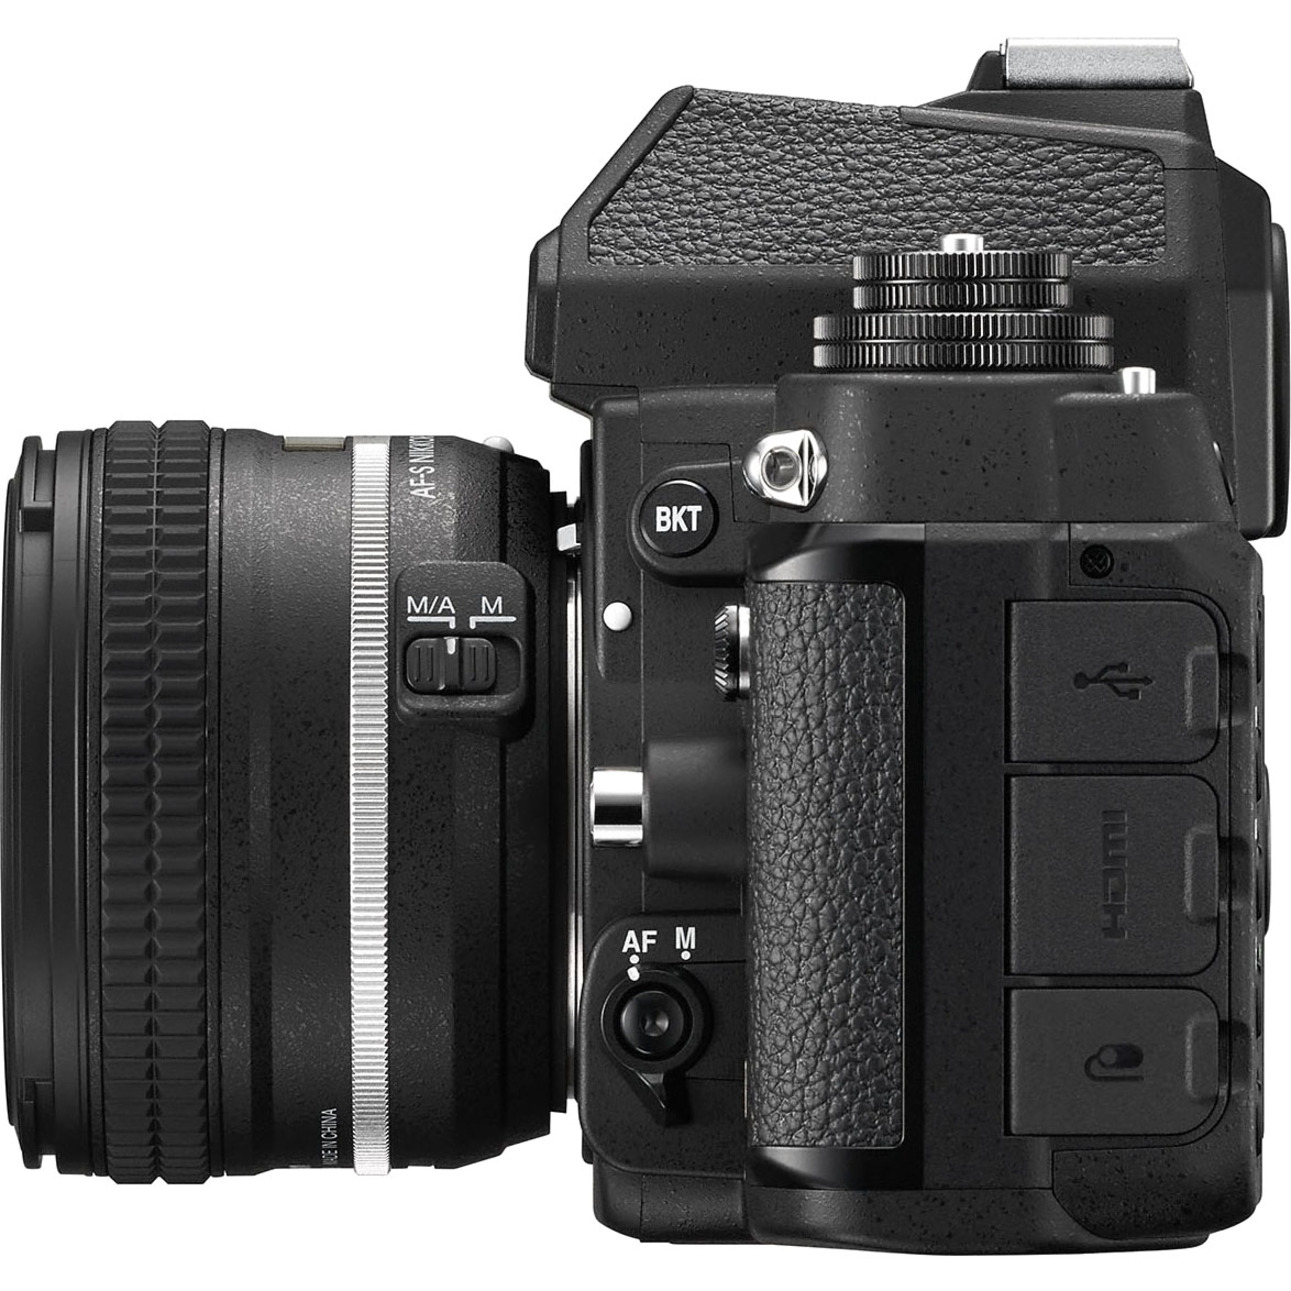 Nikon Df 16.2 Megapixel Digital SLR Camera with Lens, 1.97", Black - image 2 of 5